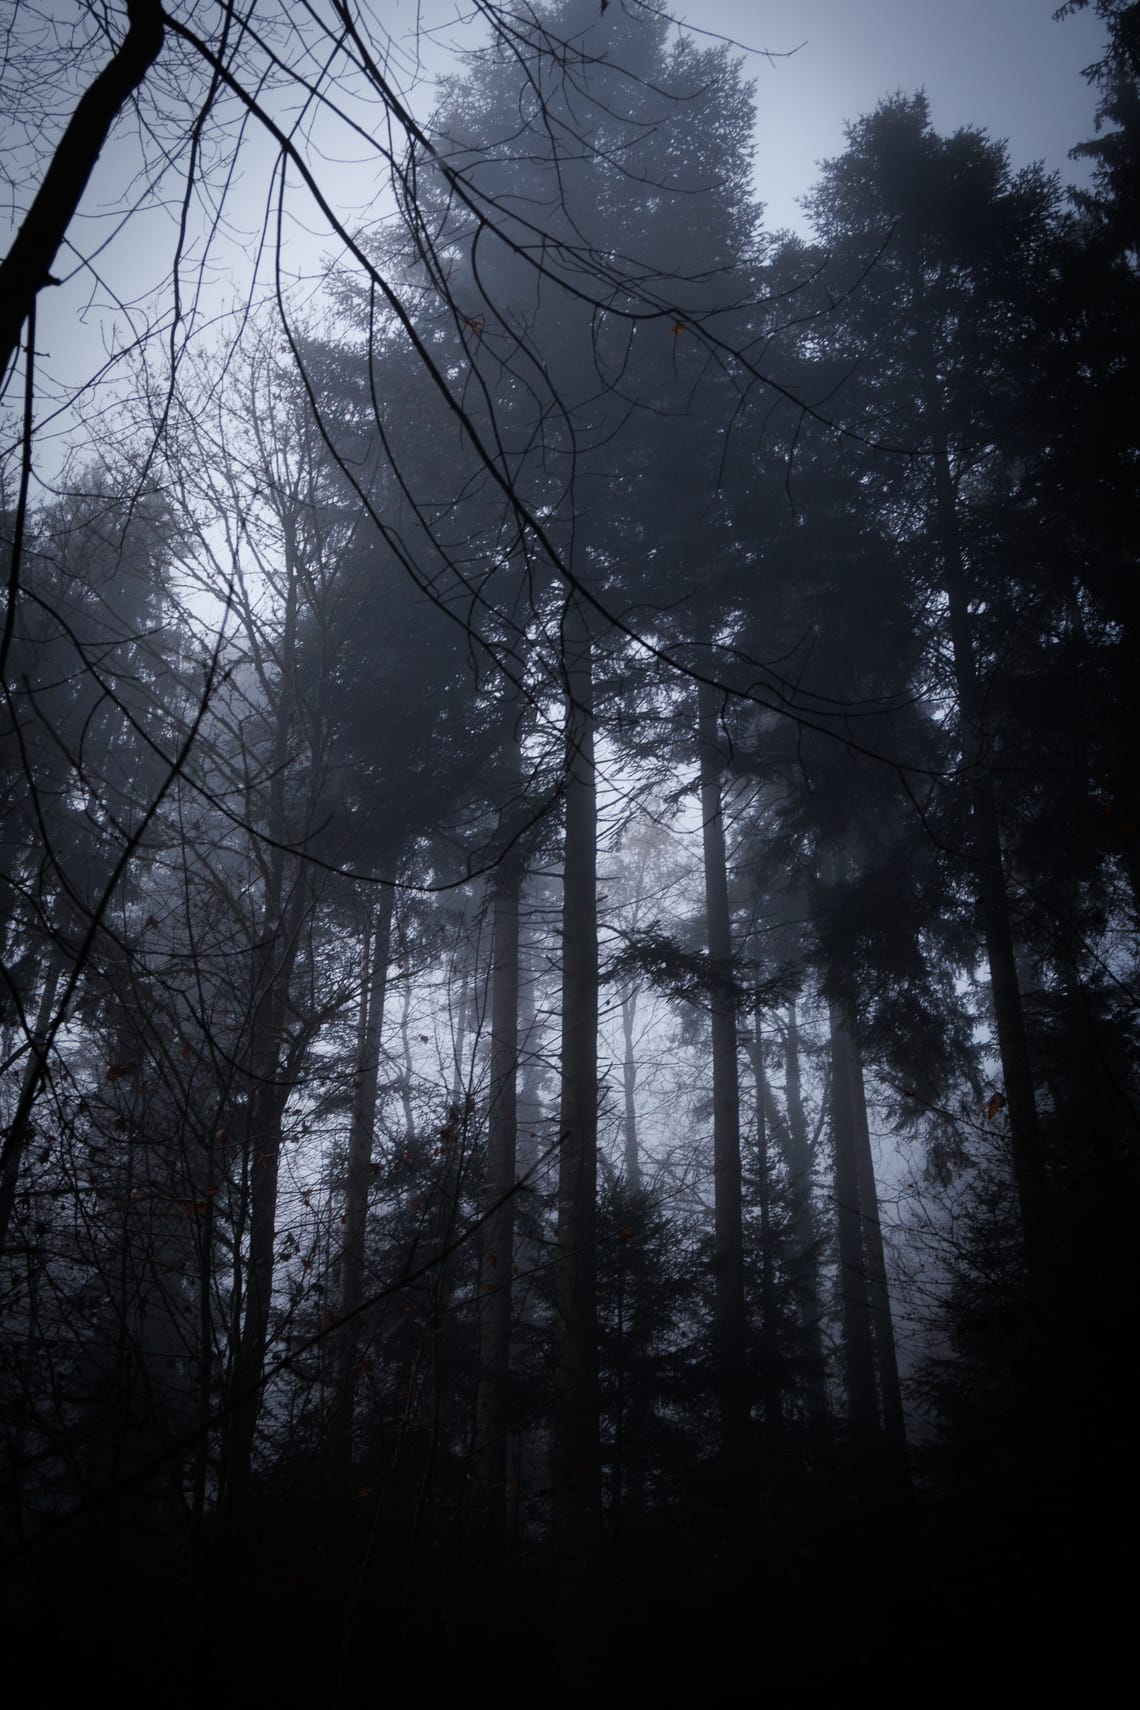 In the deep dark woods